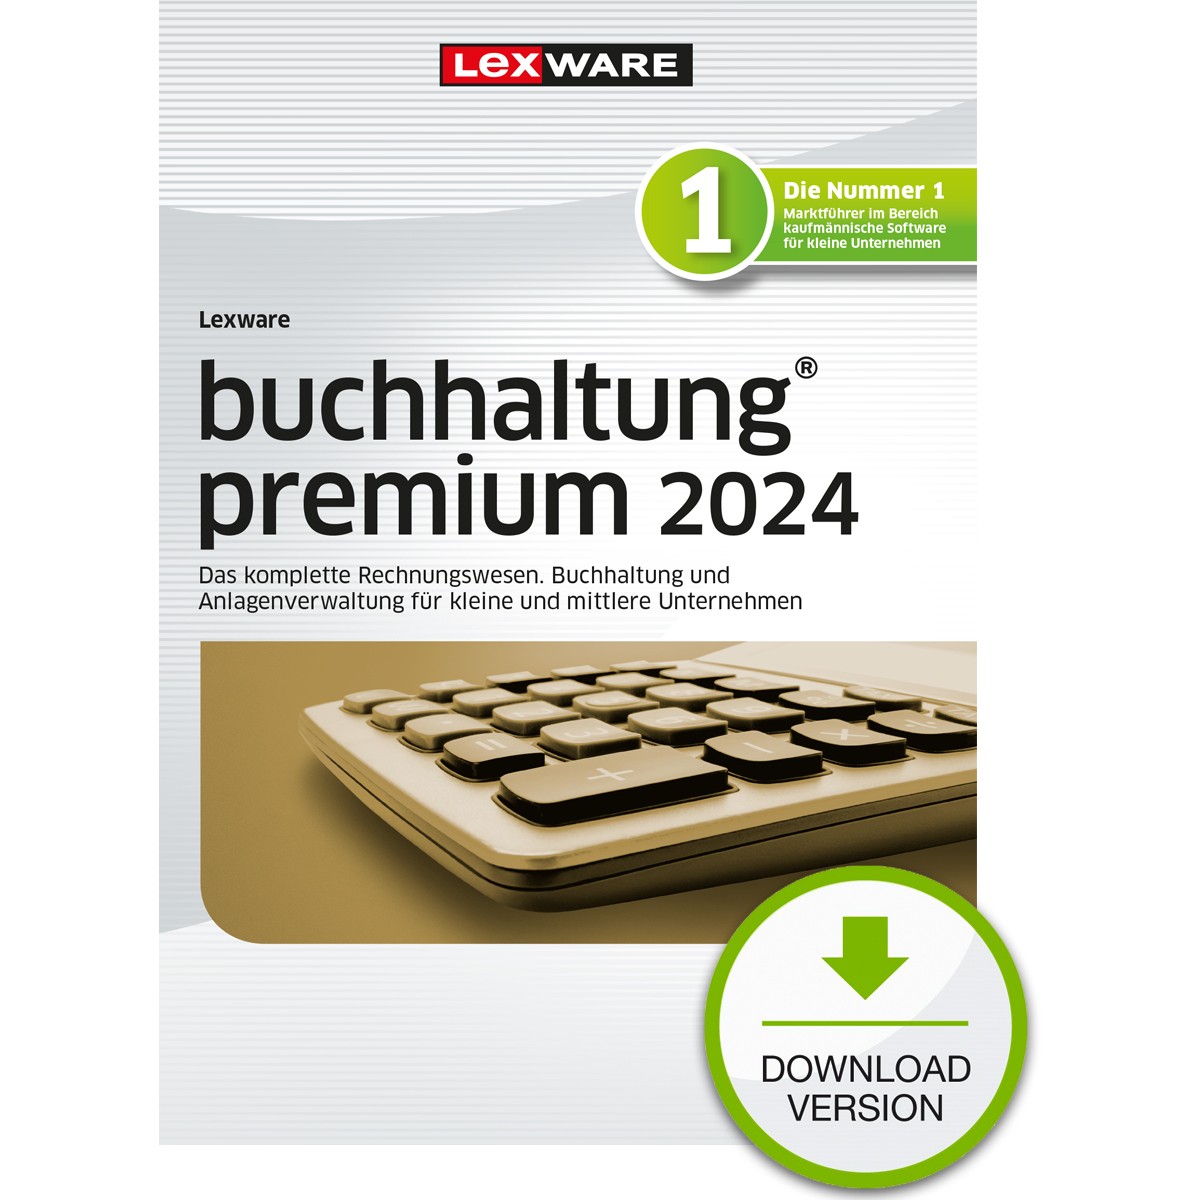 Lexware Buchhaltung Premium 2024 - 1 Device, 1 Year - ESD-DownloadESD